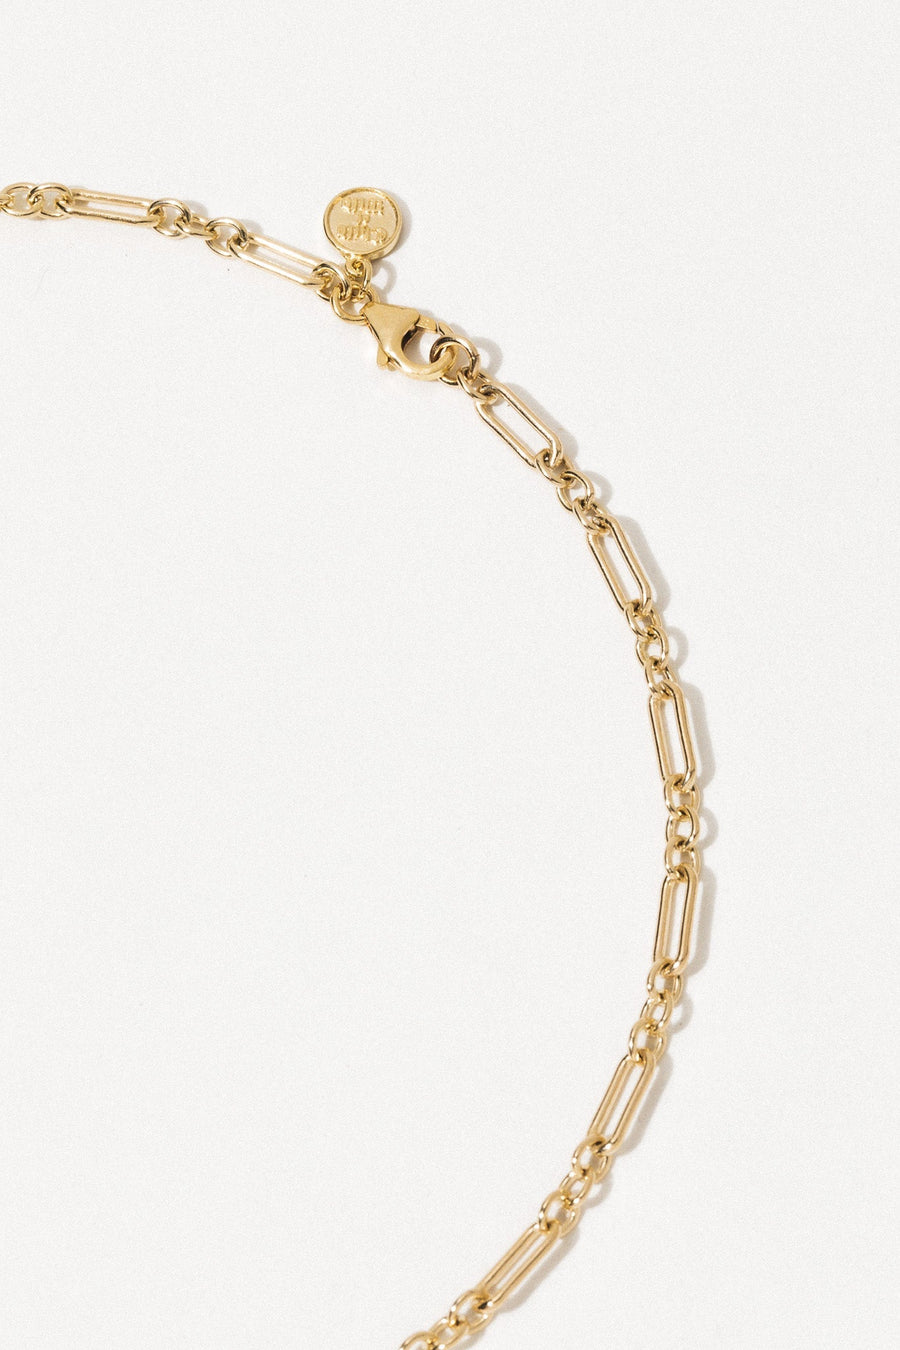 Dona Italia Jewelry Gold / 15 Inches The Pietà Necklace